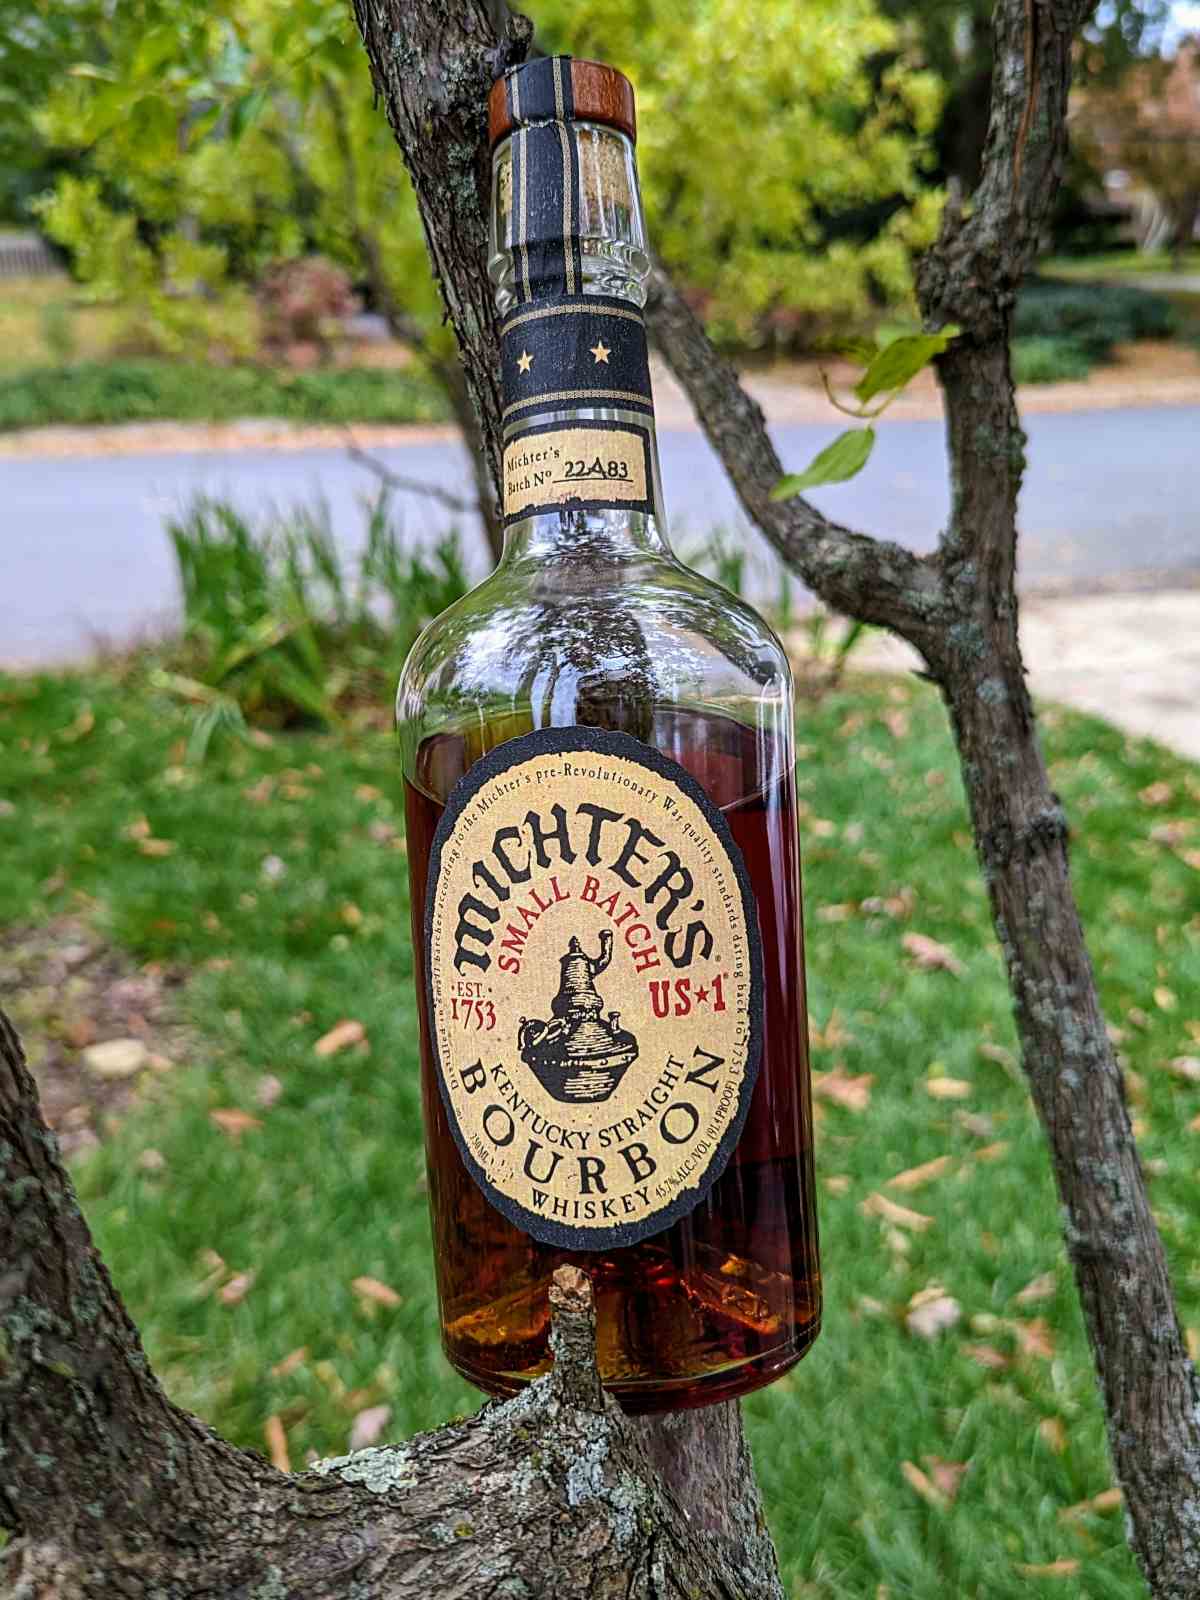 Michter’s small batch bourbon featured